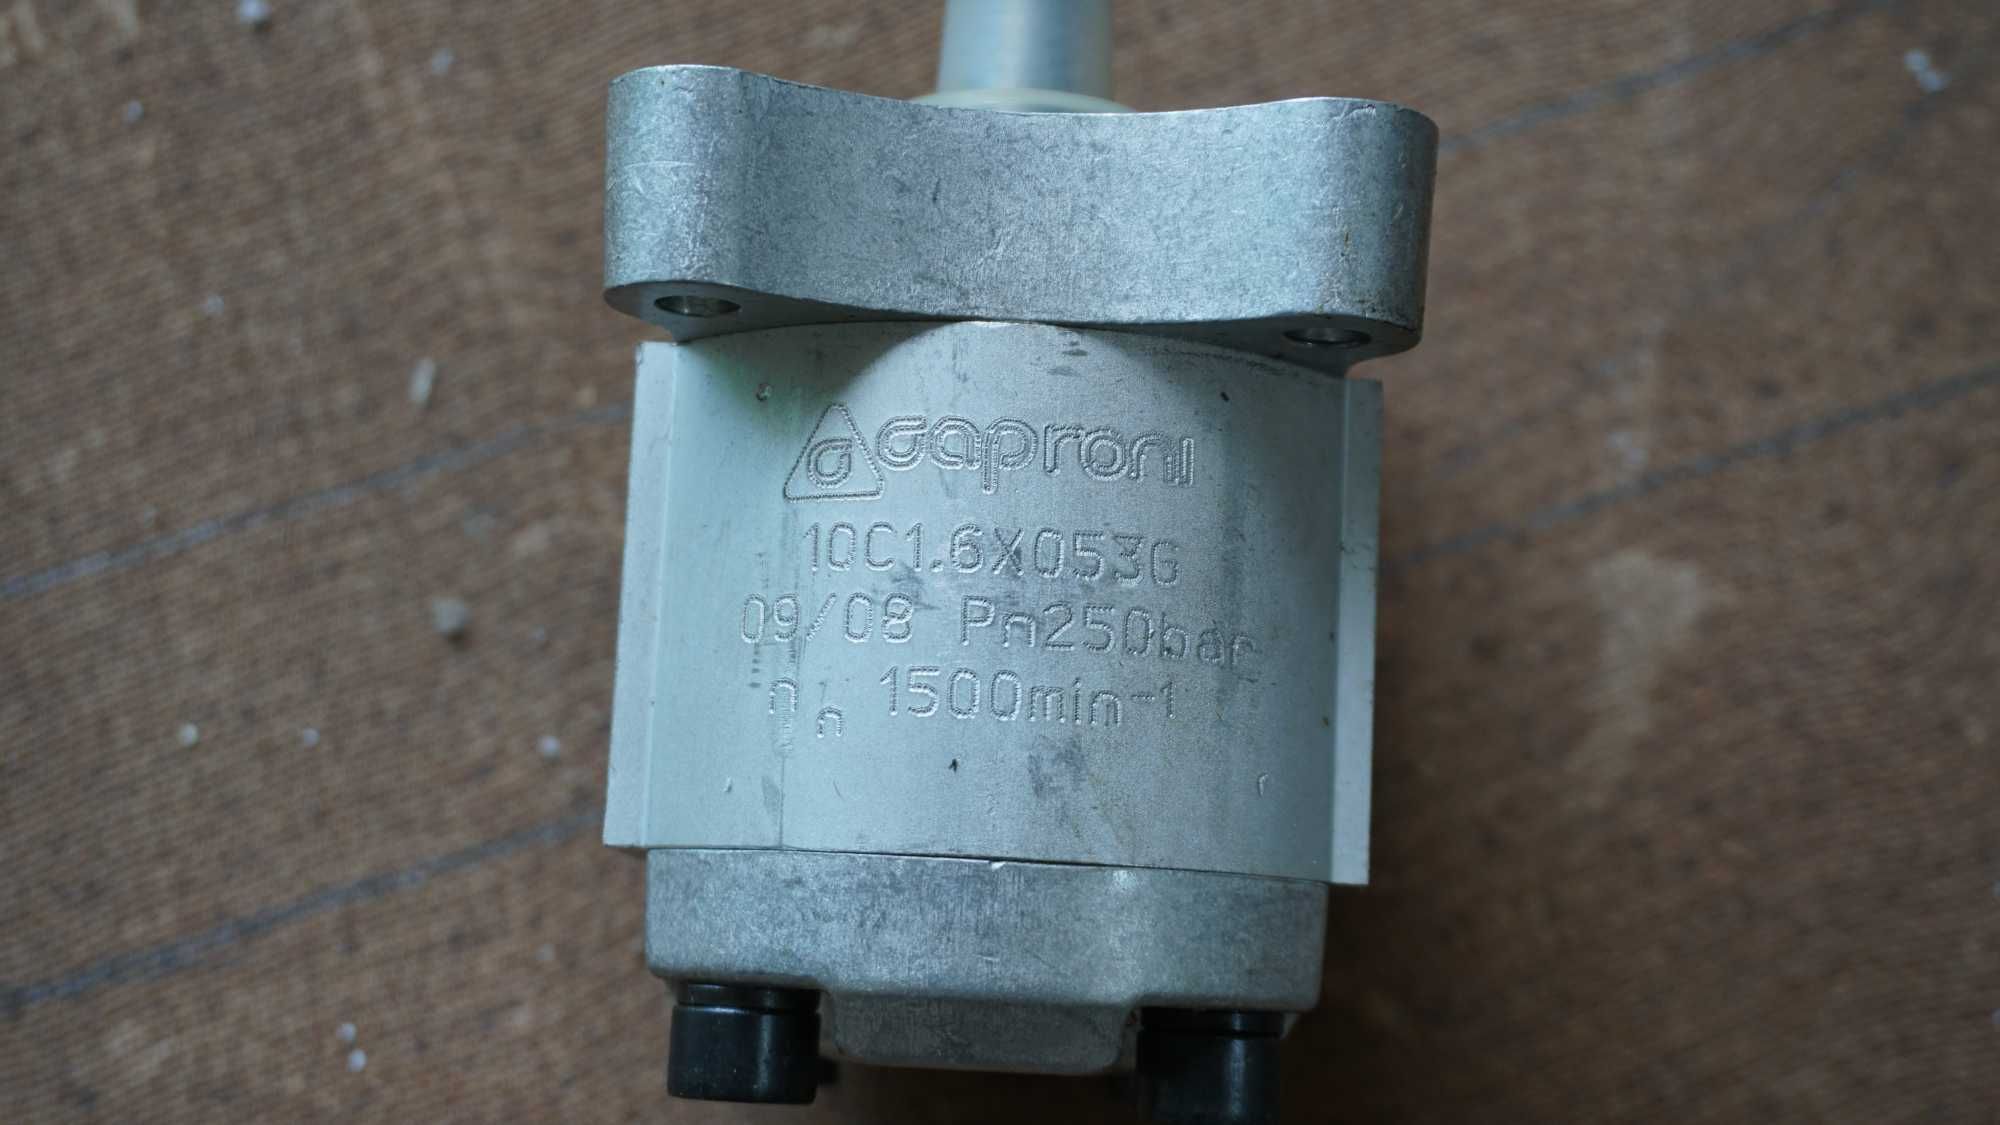 Pompa hydrauliczna Caproni 10C1.6x053G